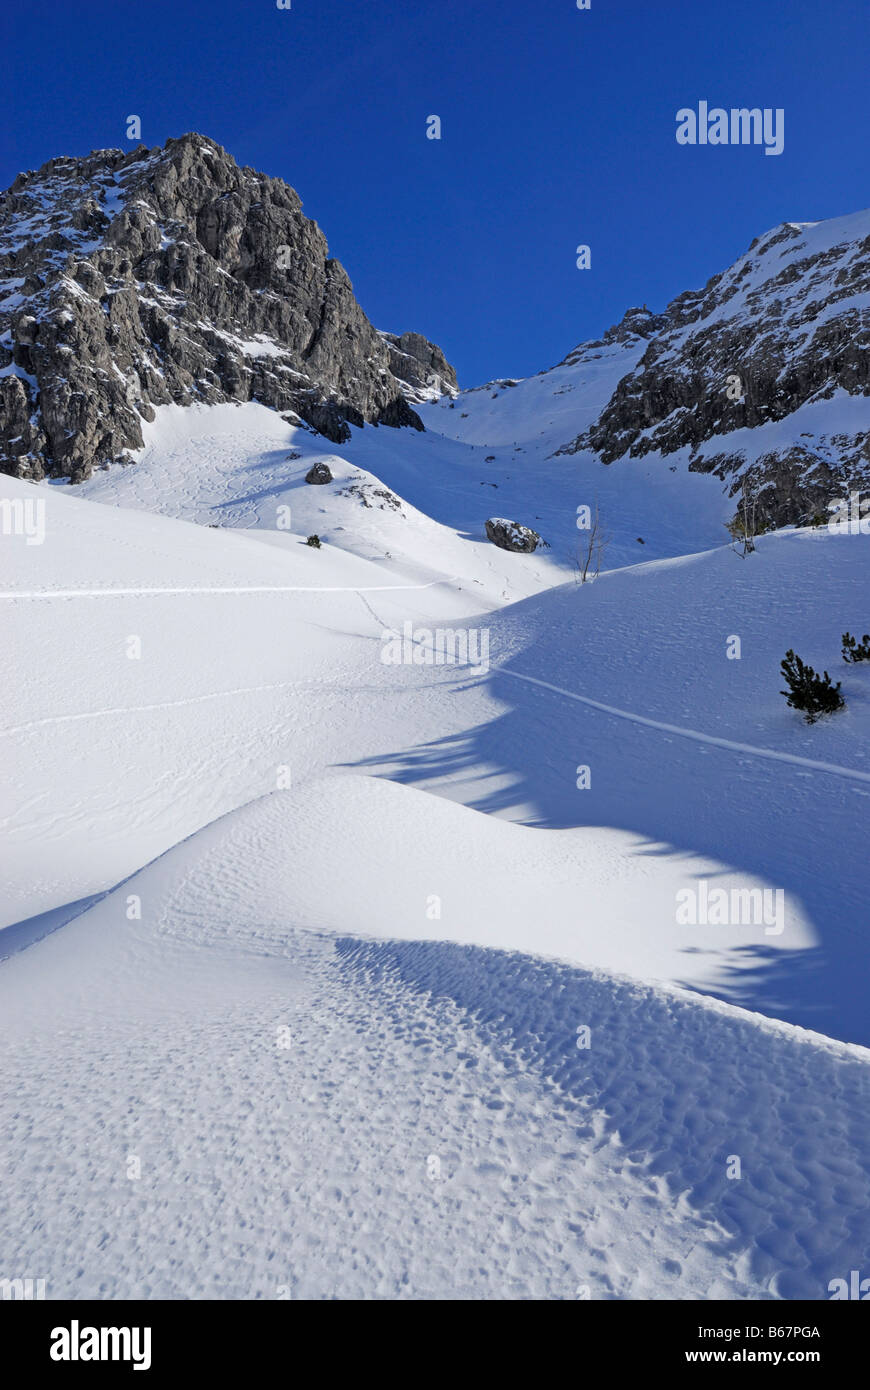 snow-covered cirque with snow dunes beneath Schafalpenkoepfe, Ochsenloch, Kleinwalsertal, Allgaeu range, Allgaeu, Vorarlberg, Au Stock Photo